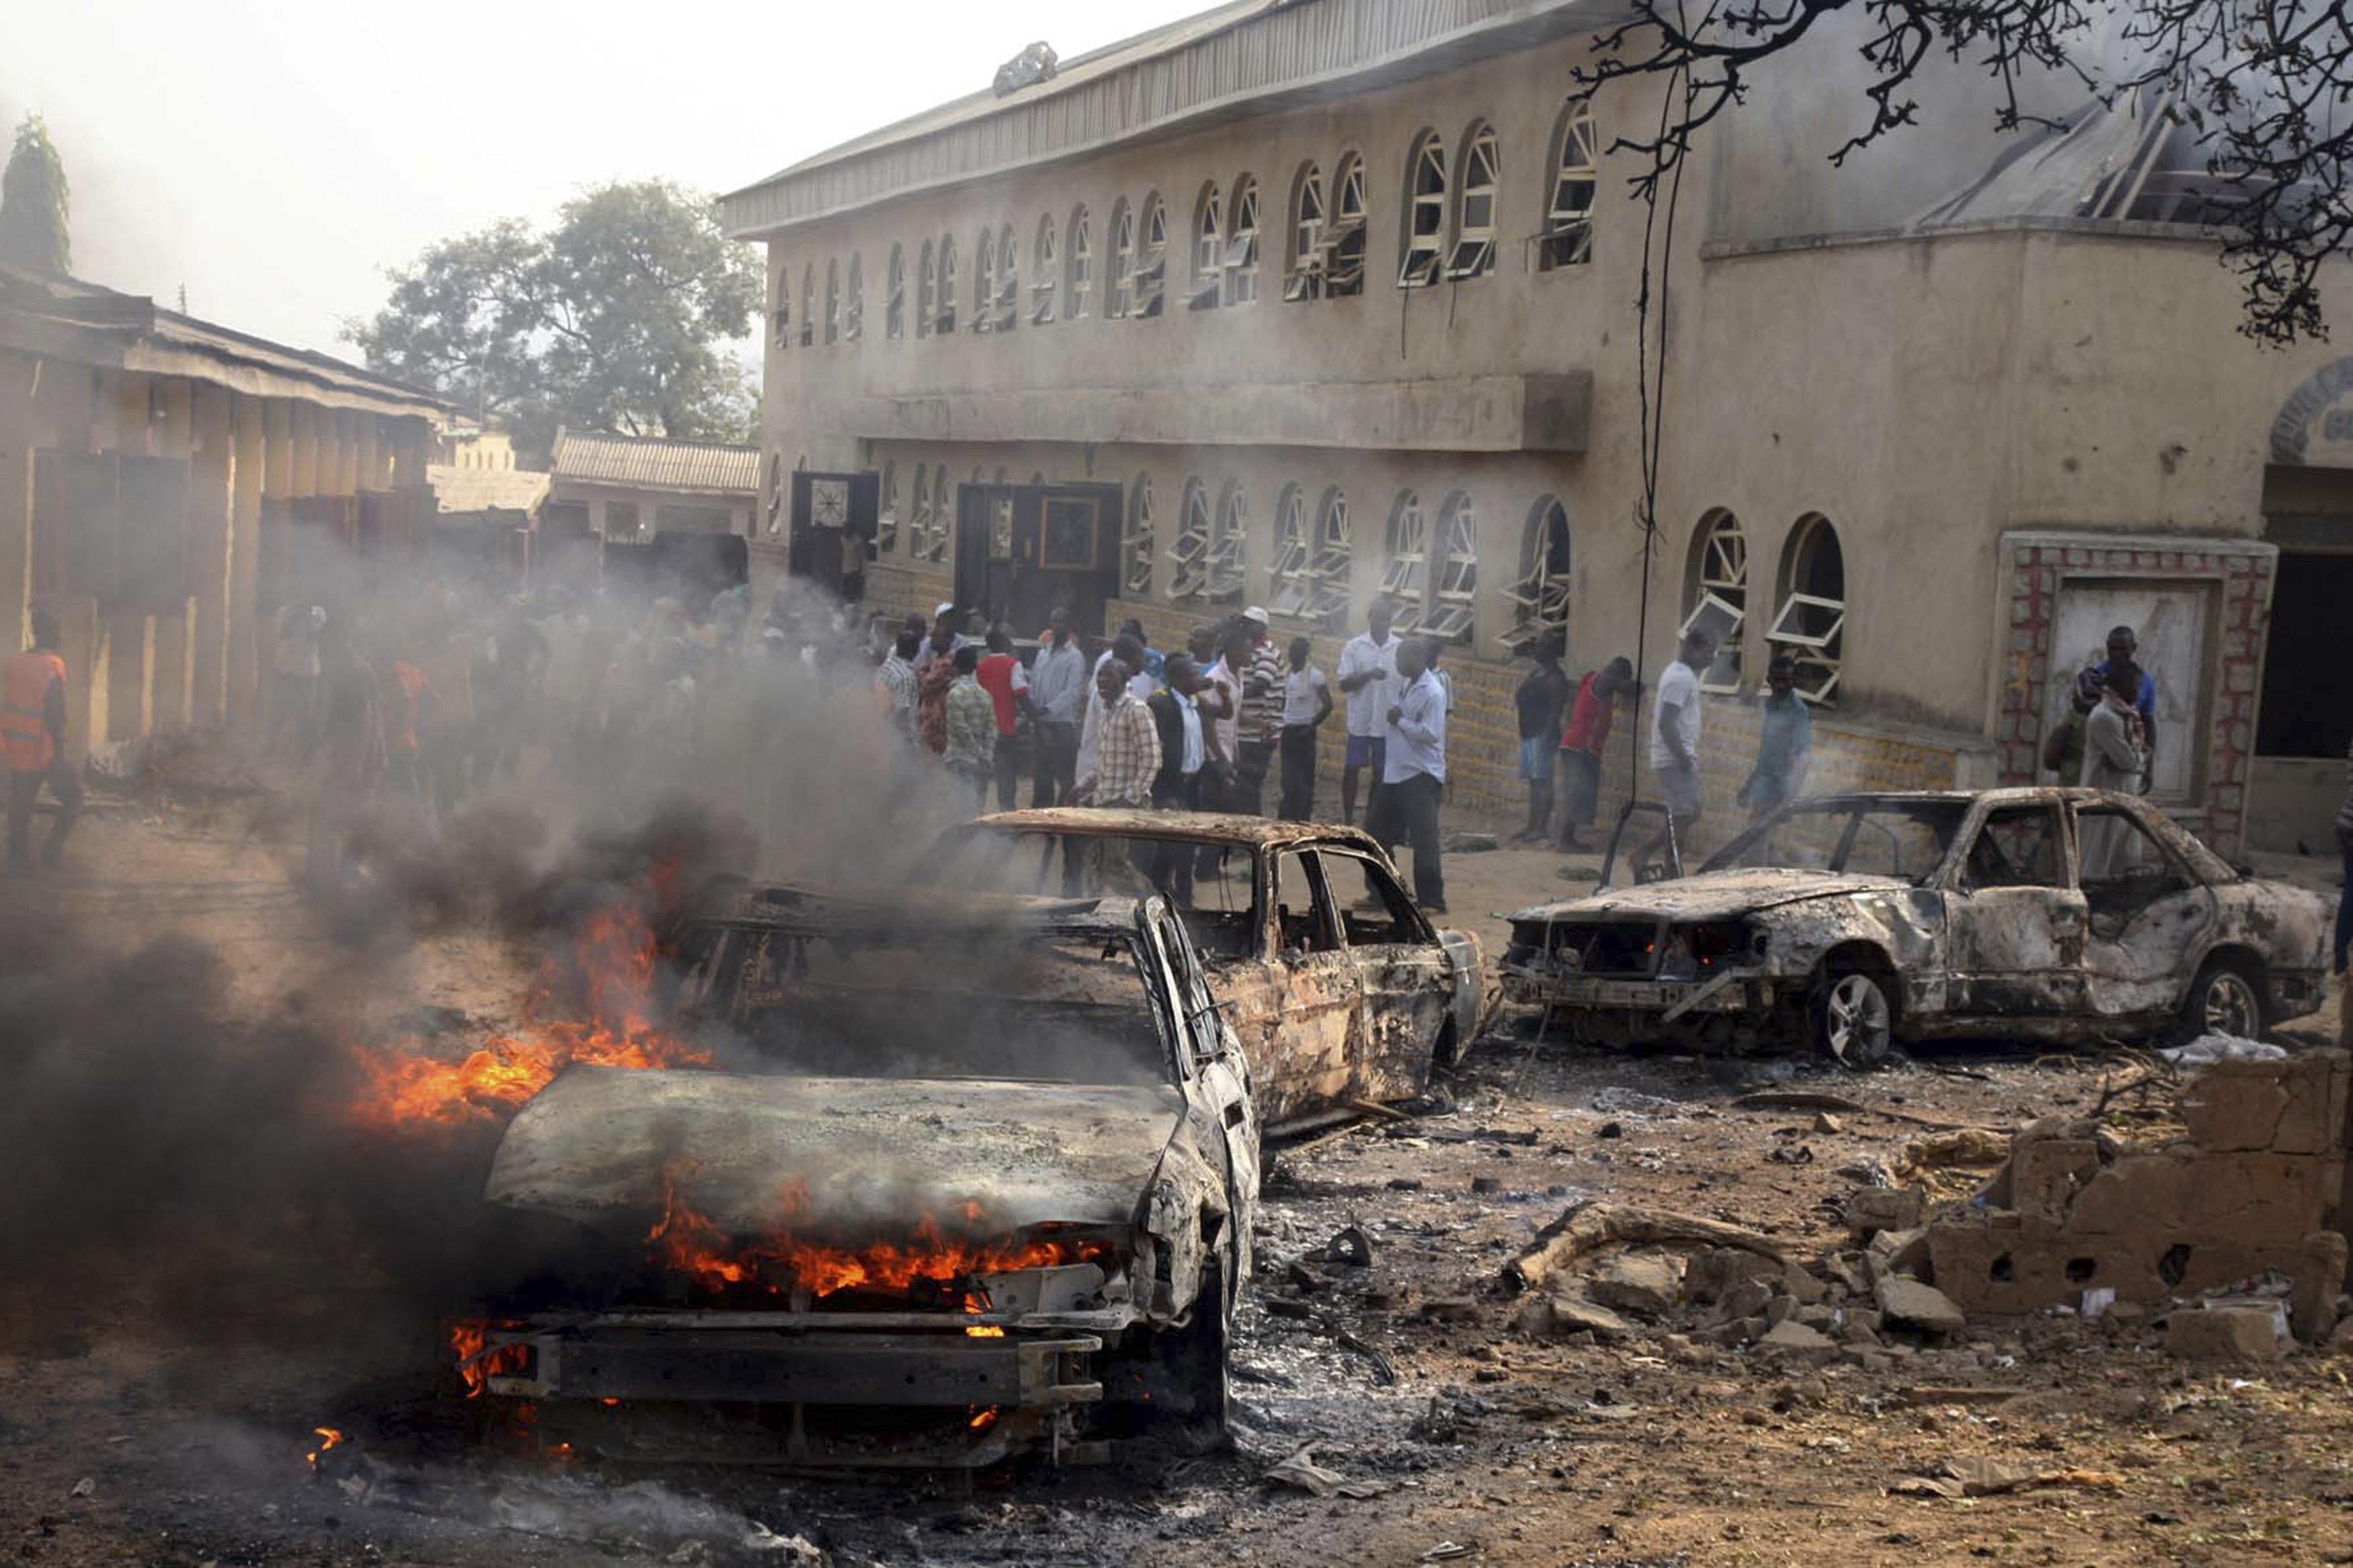 Центр террор. Атака Боко харам в Нигерии 2014. Теракт Боко харам в Нигерии. Атака Боко-харам в Нигерии 5-6 мая 2014. Атака Боко харам в Нигерии 300 погибших.